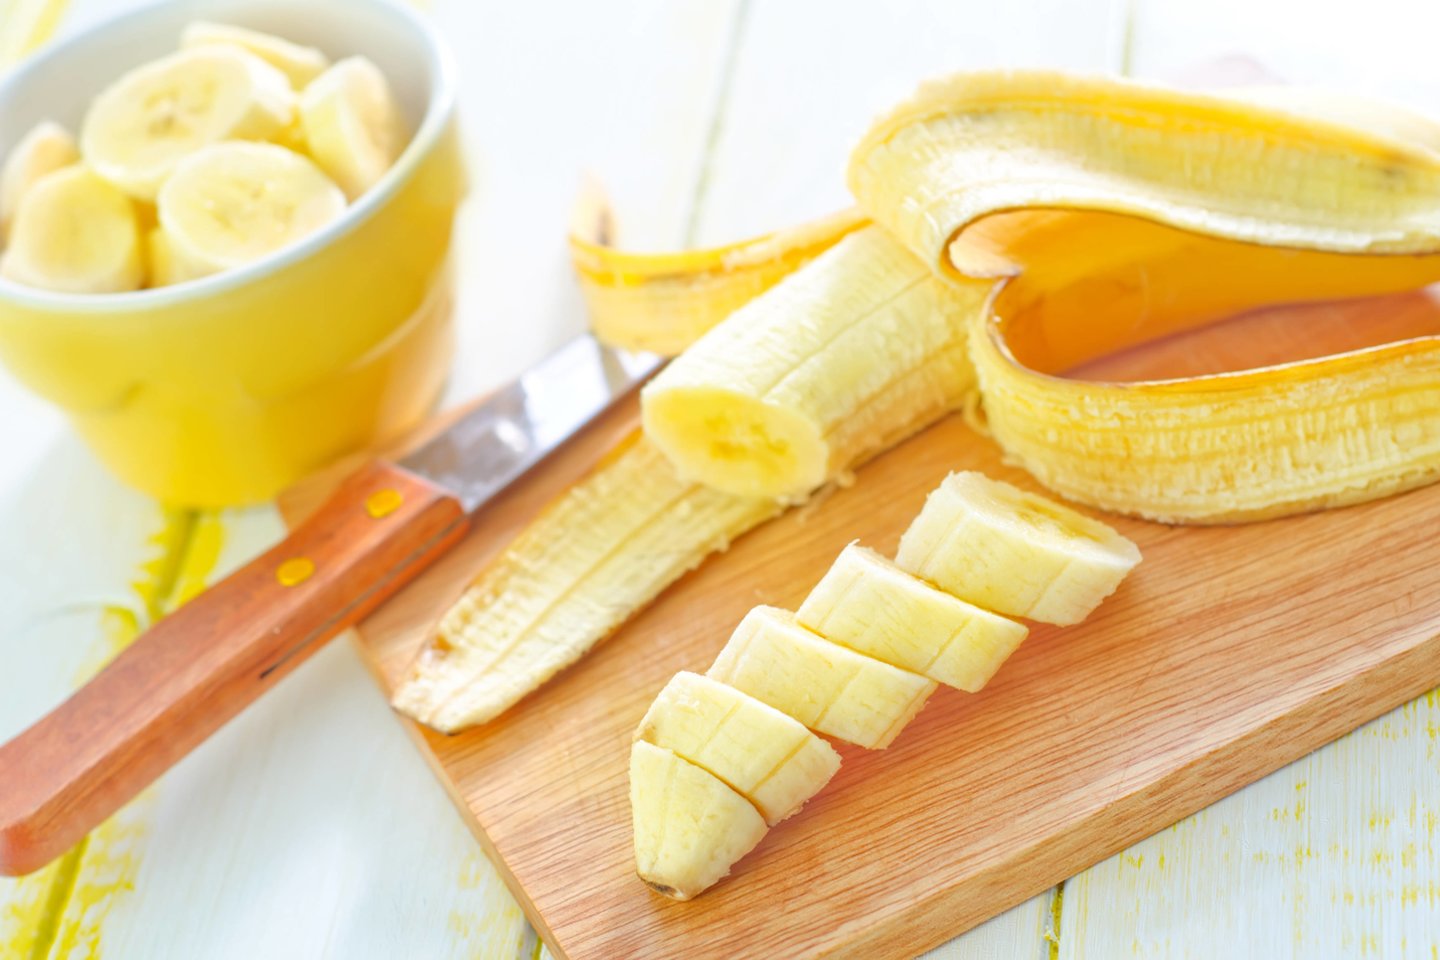 Bananas yra pats populiariausias vaisius Lietuvoje ir visame pasaulyje.<br>123RF inuotr.